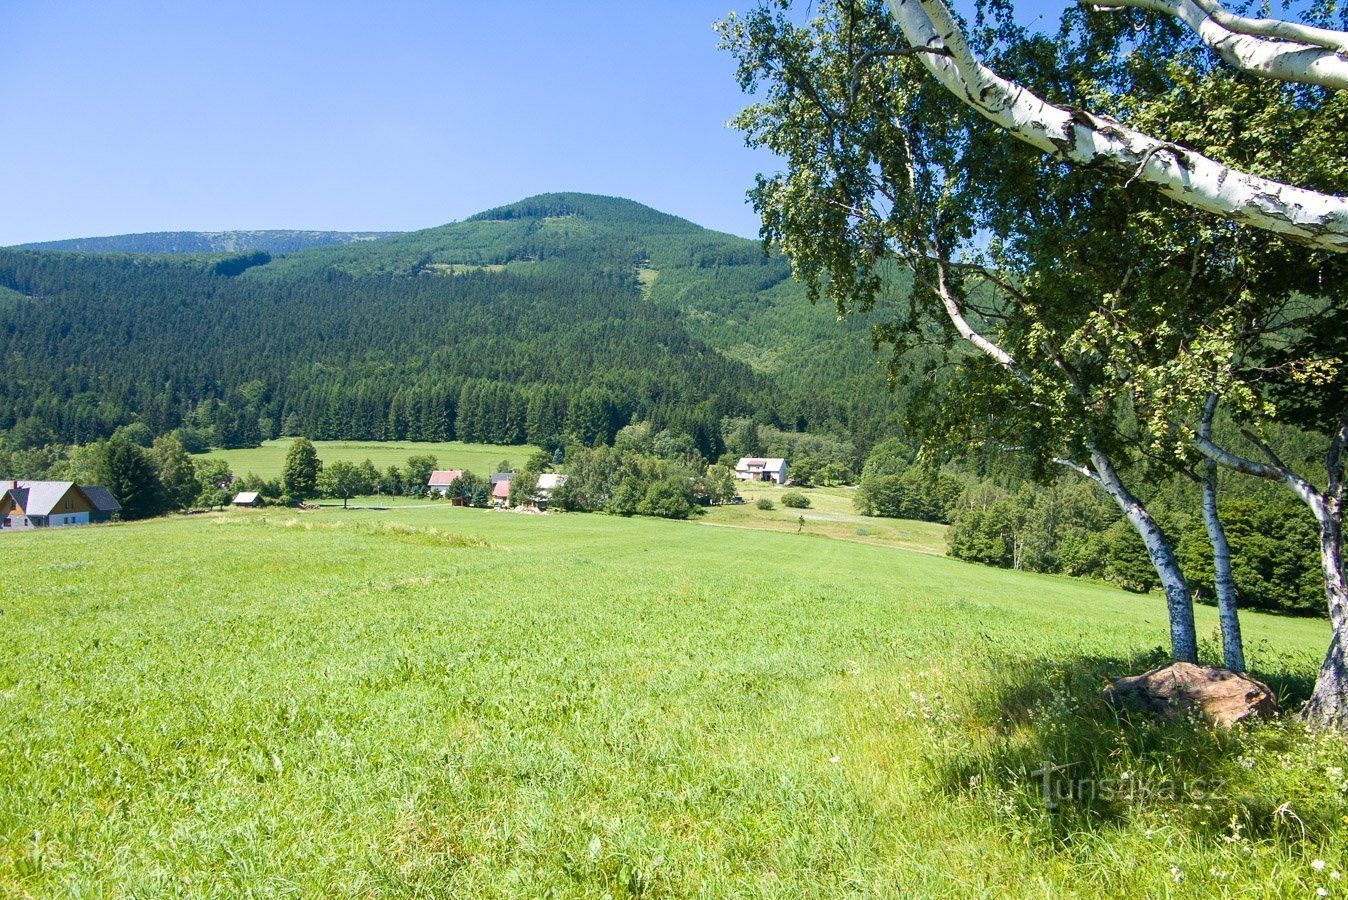 Točník 和稍微隐蔽的 Červená hora 高出 Filipovice